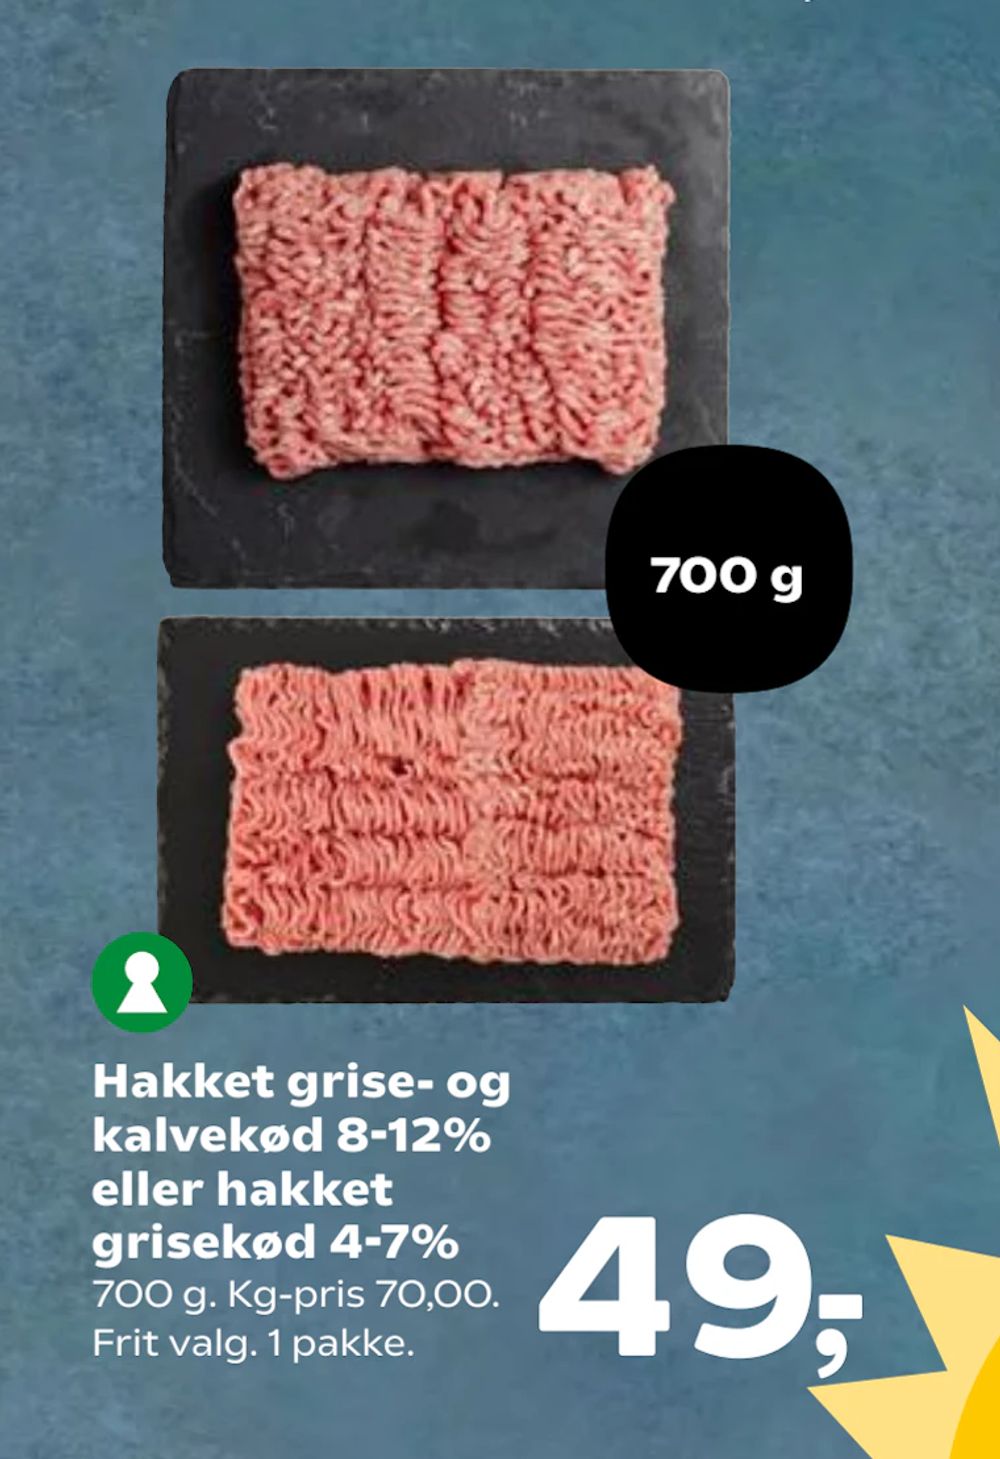 Tilbud på Hakket grise- og kalvekød 8-12% eller hakket grisekød 4-7% fra SuperBrugsen til 49 kr.